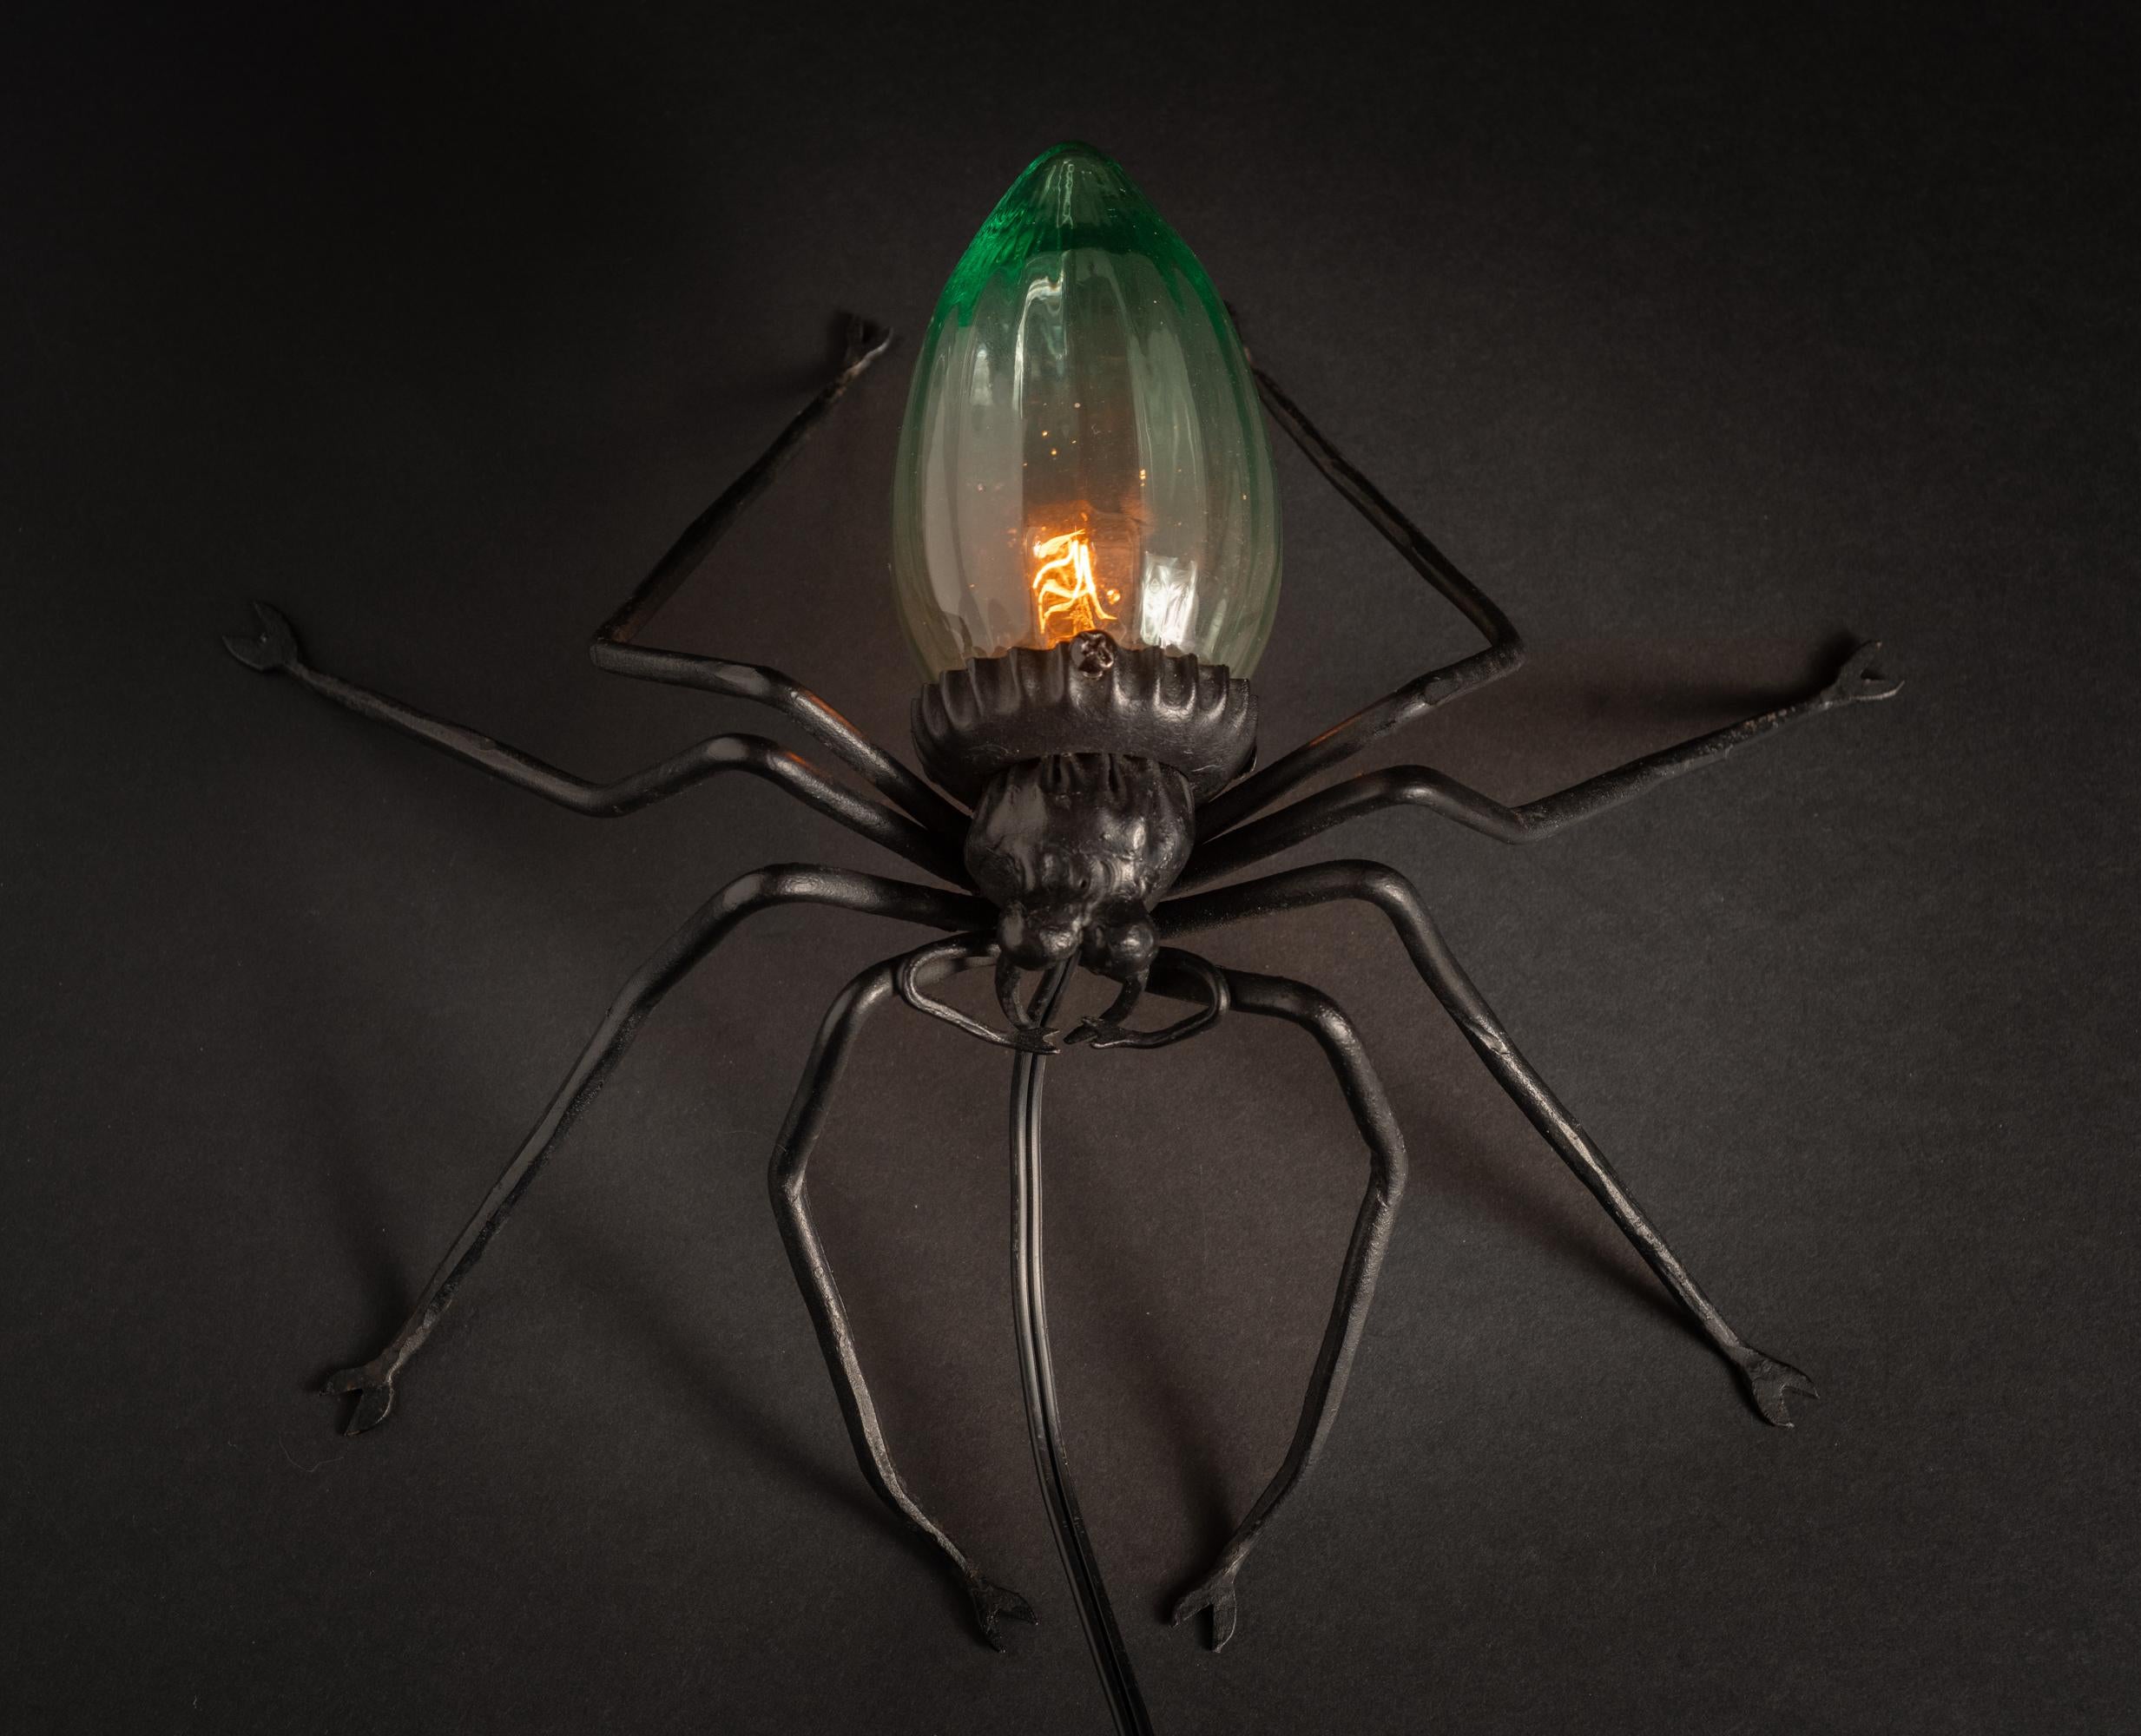 European spider table lamp, c. 1925.